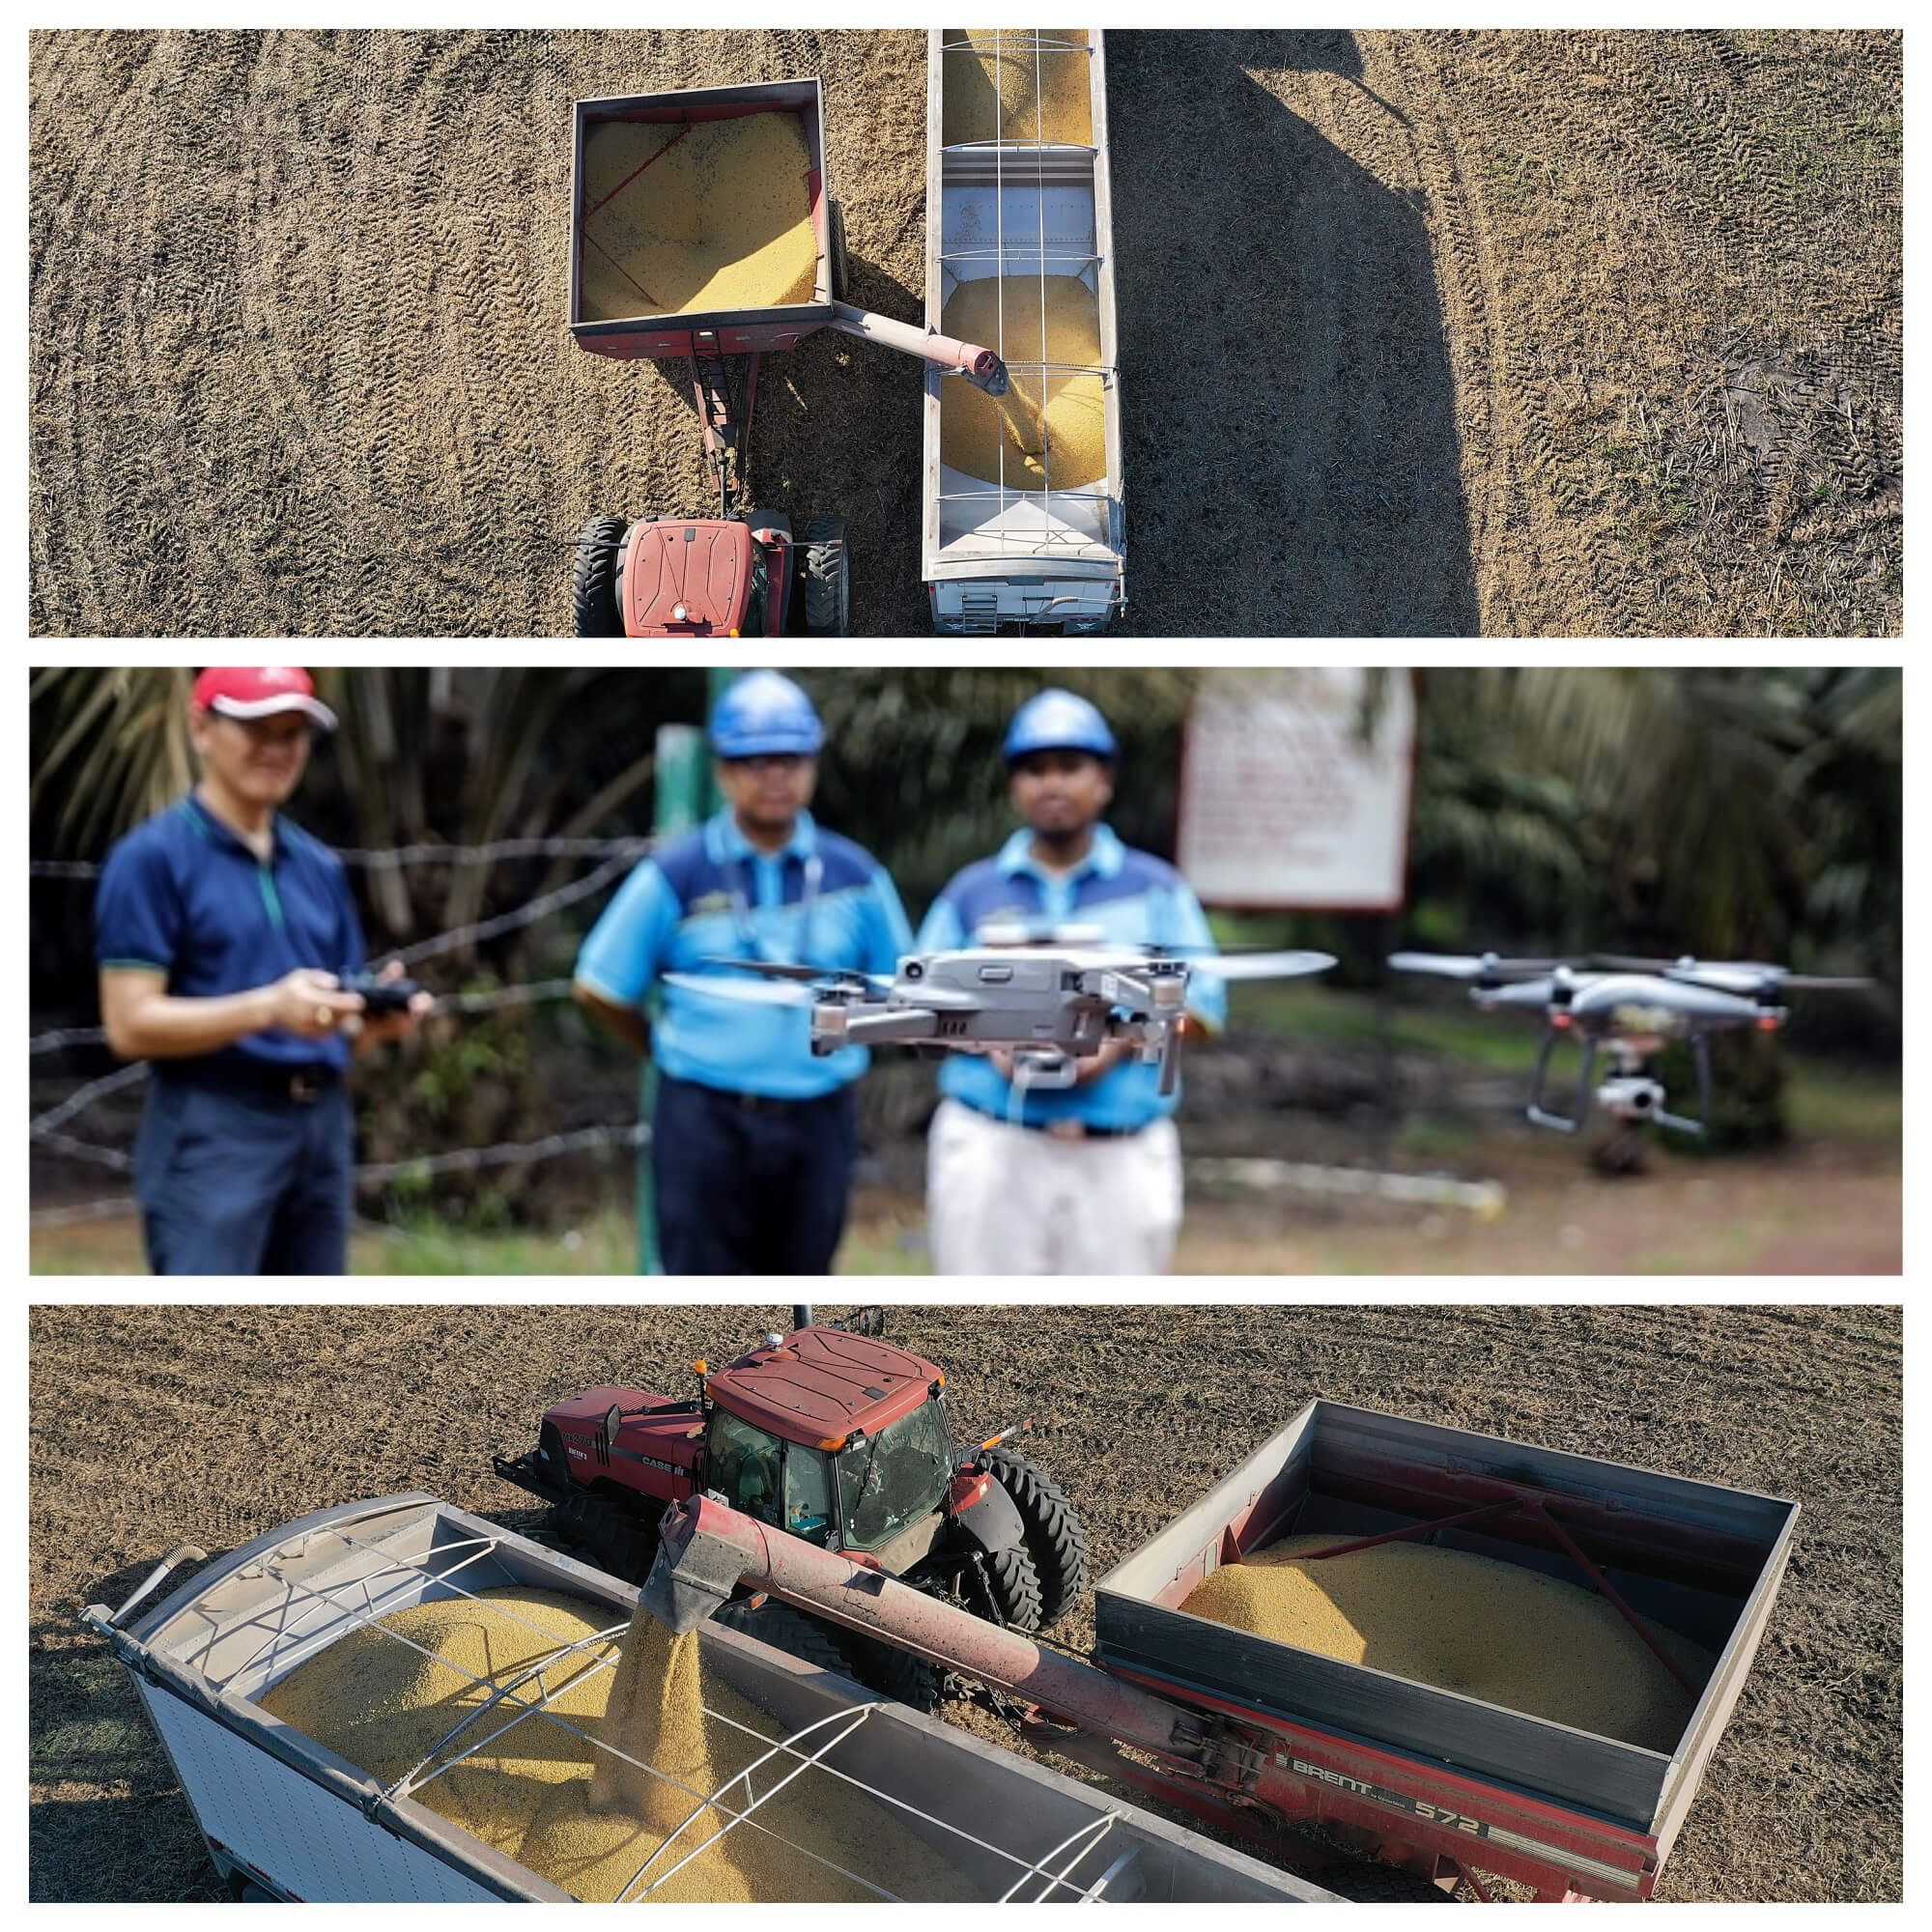 Foto: Granjeros utilizan un dron para vigilar la cosecha. Getty Images